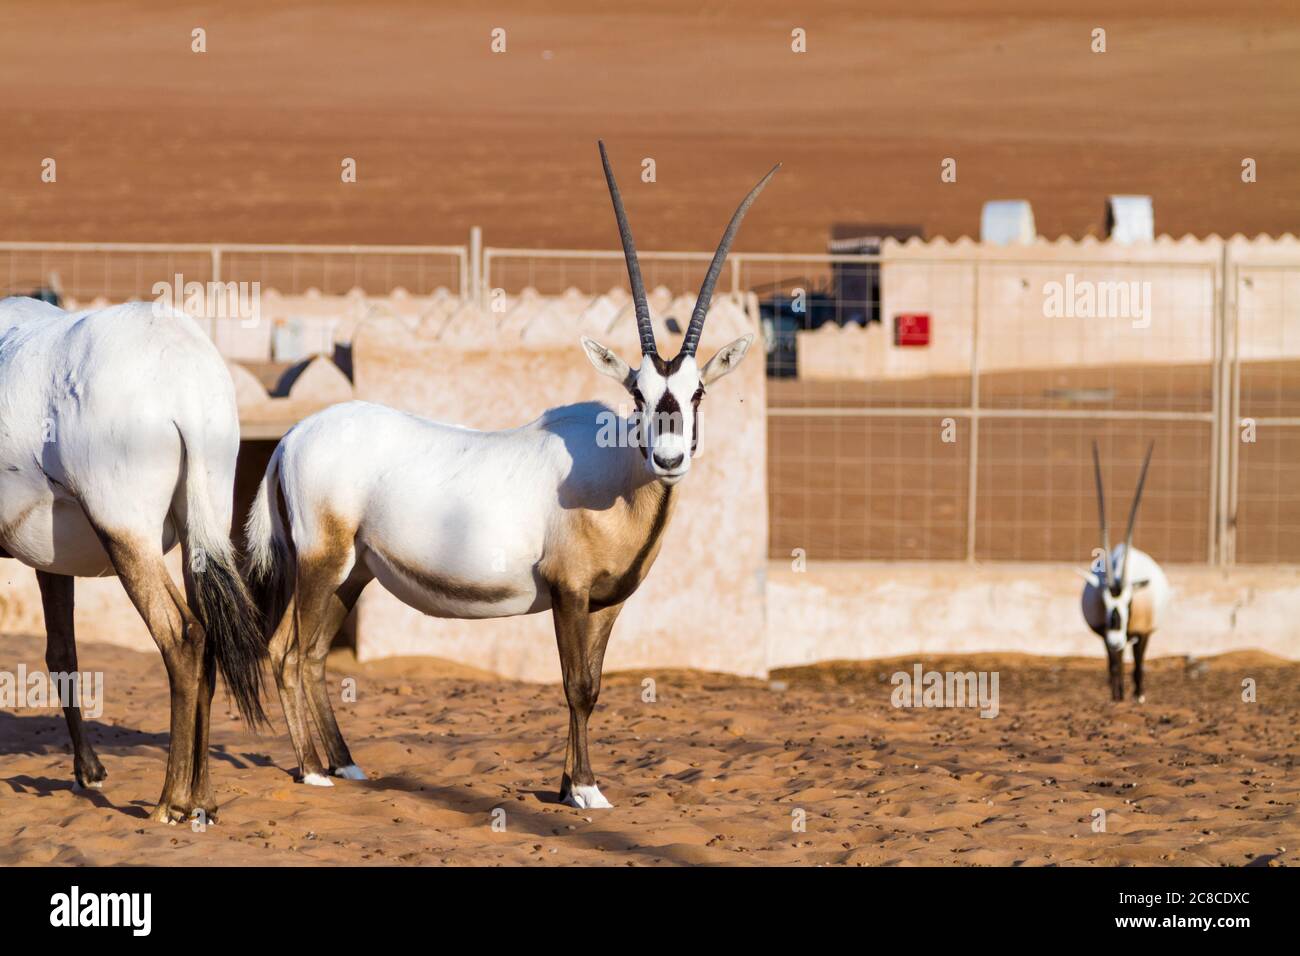 Grandi antilopi con corna spettacolari, Gemsbok, gazella Oryx, allevati in cattività nel deserto dell'Oman. Foto Stock